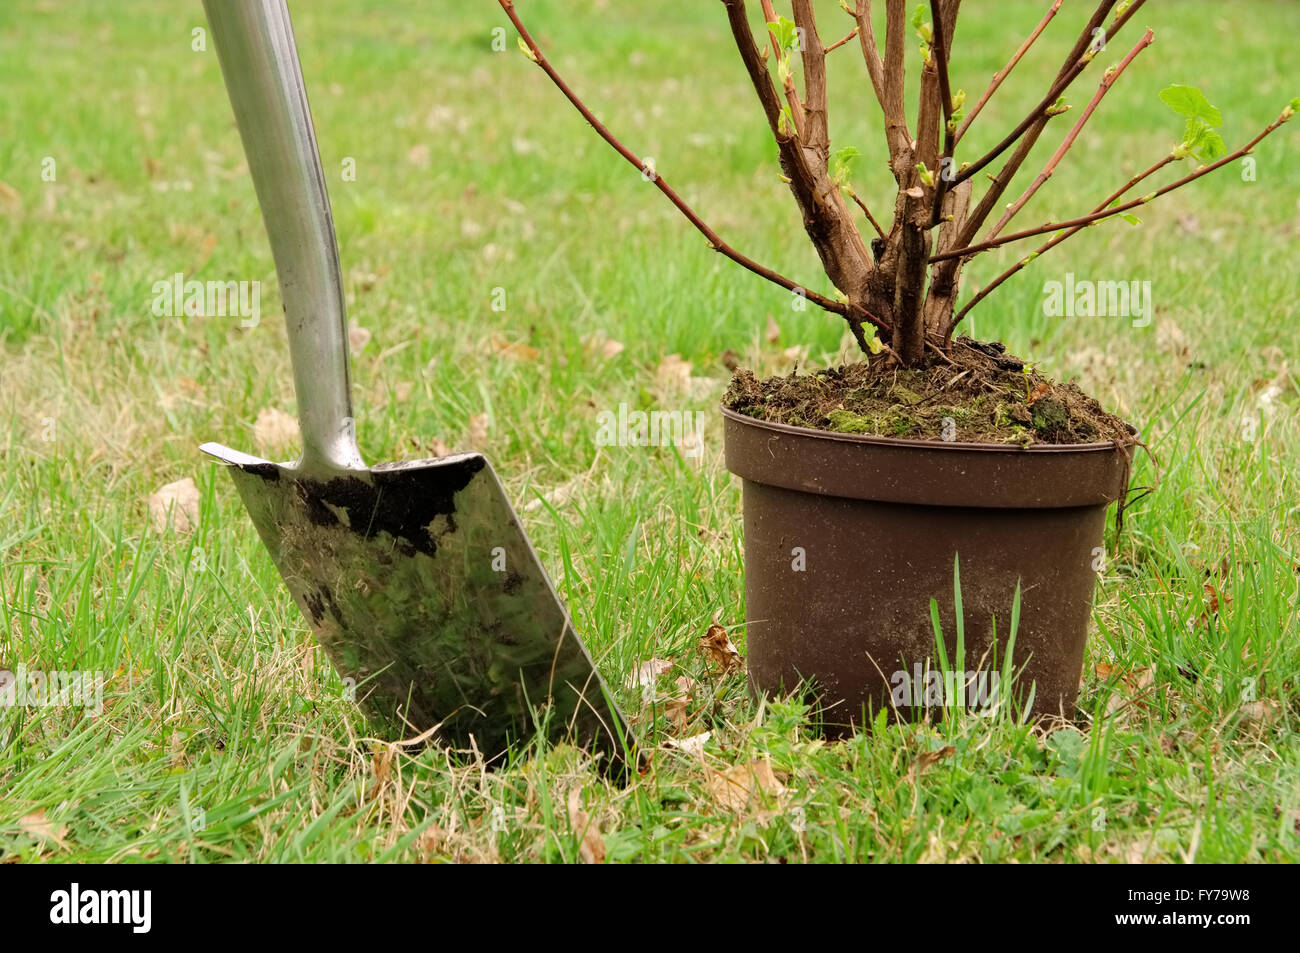 Strauch einpflanzen - piantare un arbusto 02 Foto Stock